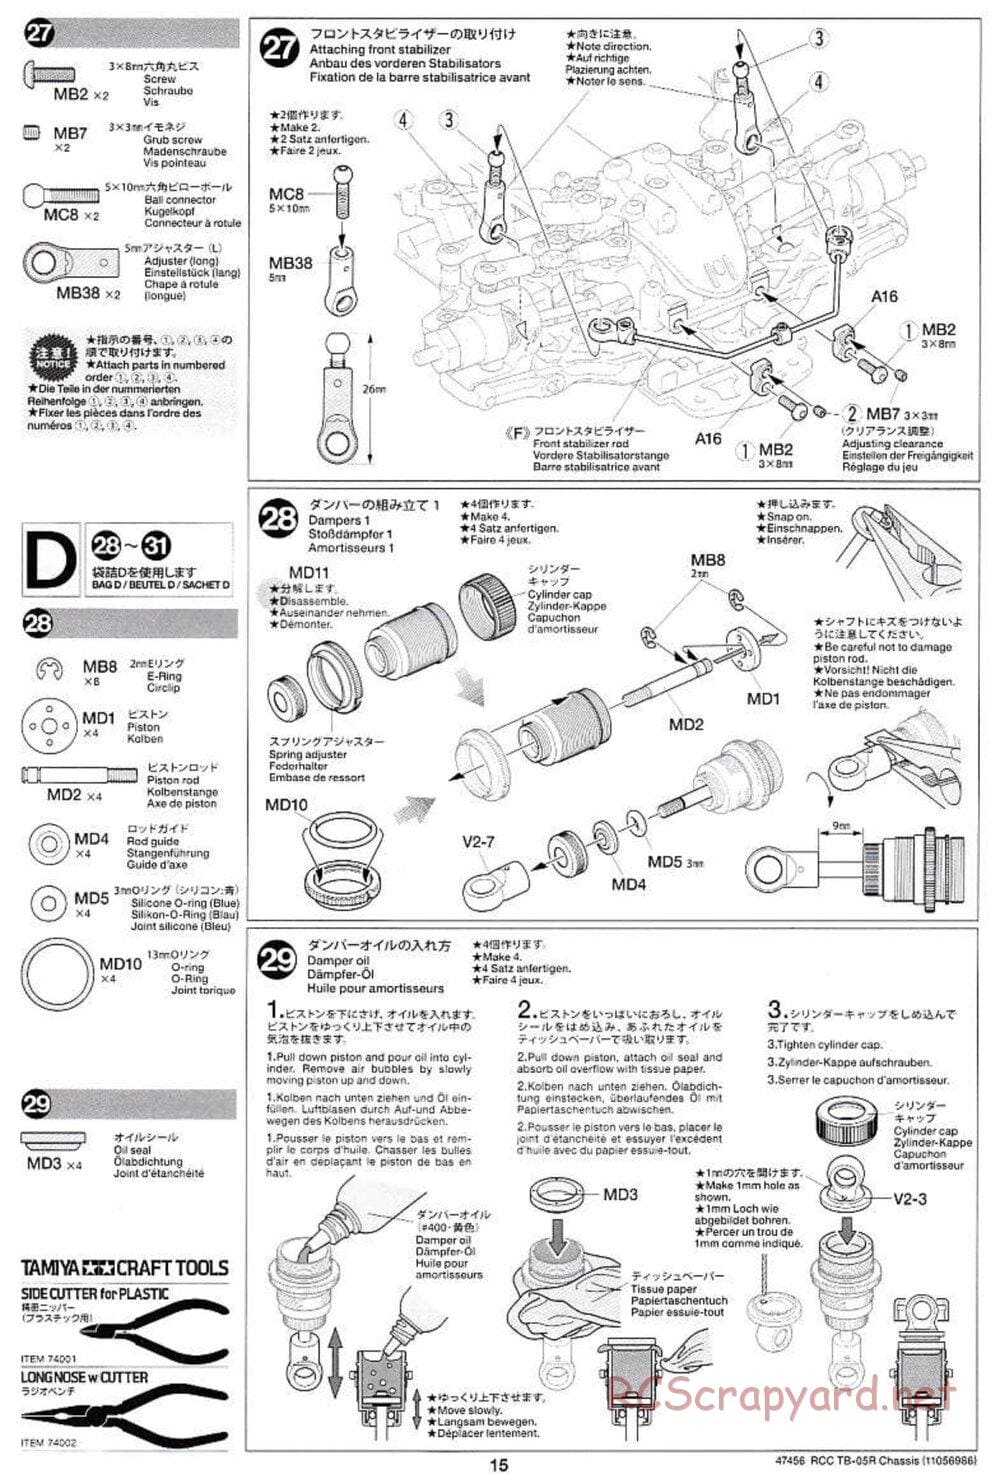 Tamiya - TB-05R Chassis - Manual - Page 15